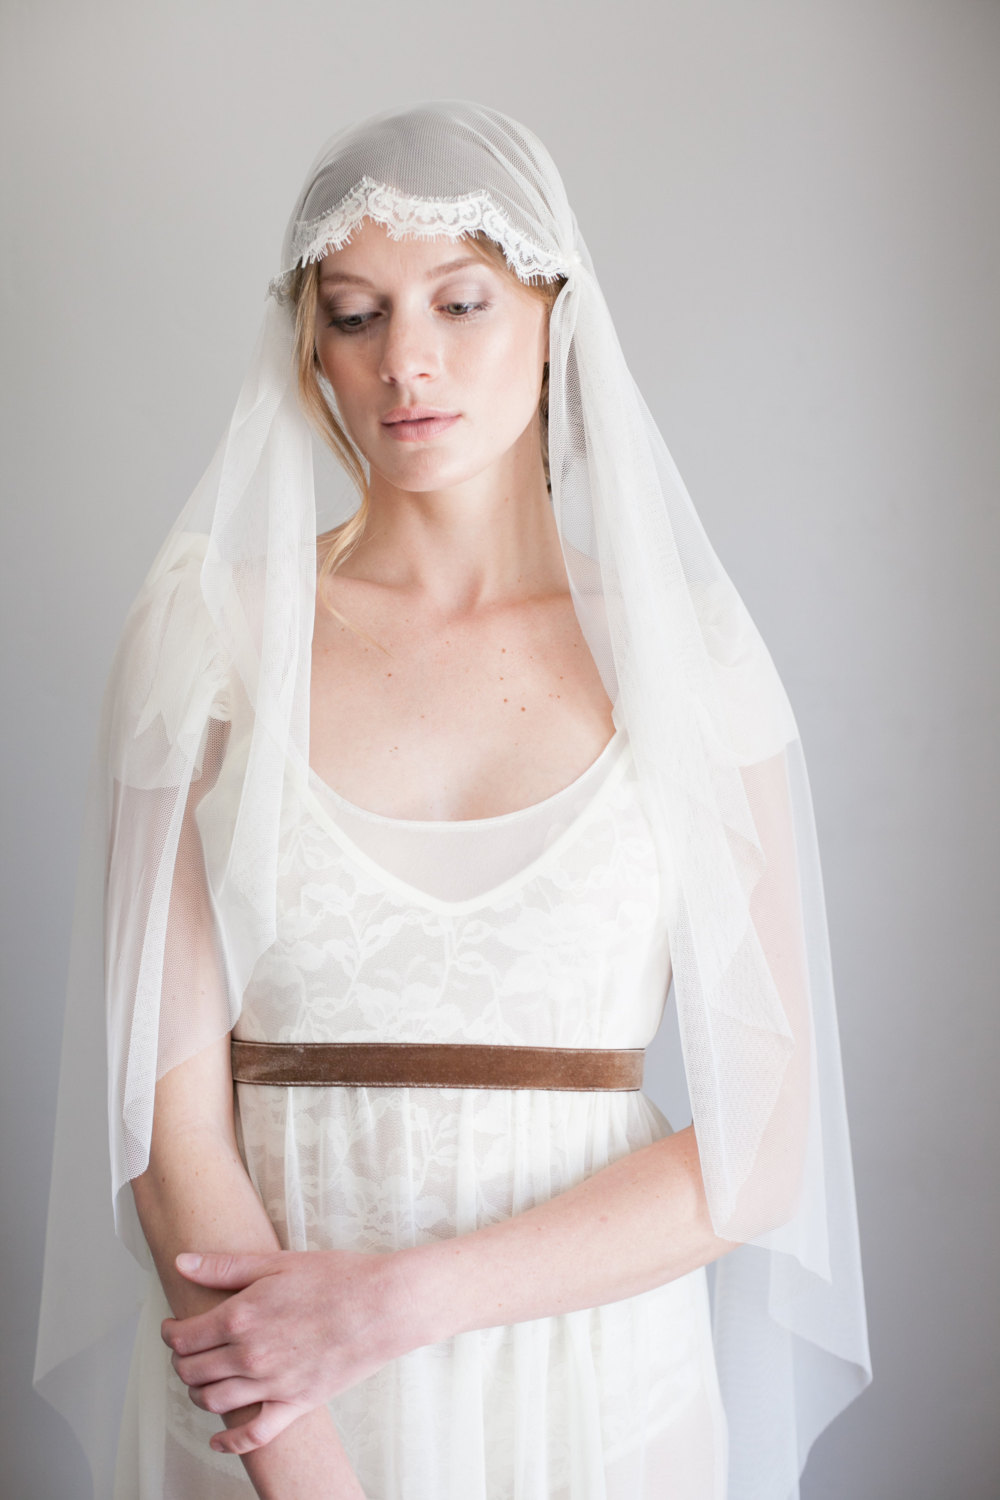 Vintage veils from Mignonne Handmade - Lace Juliet Cap Veil